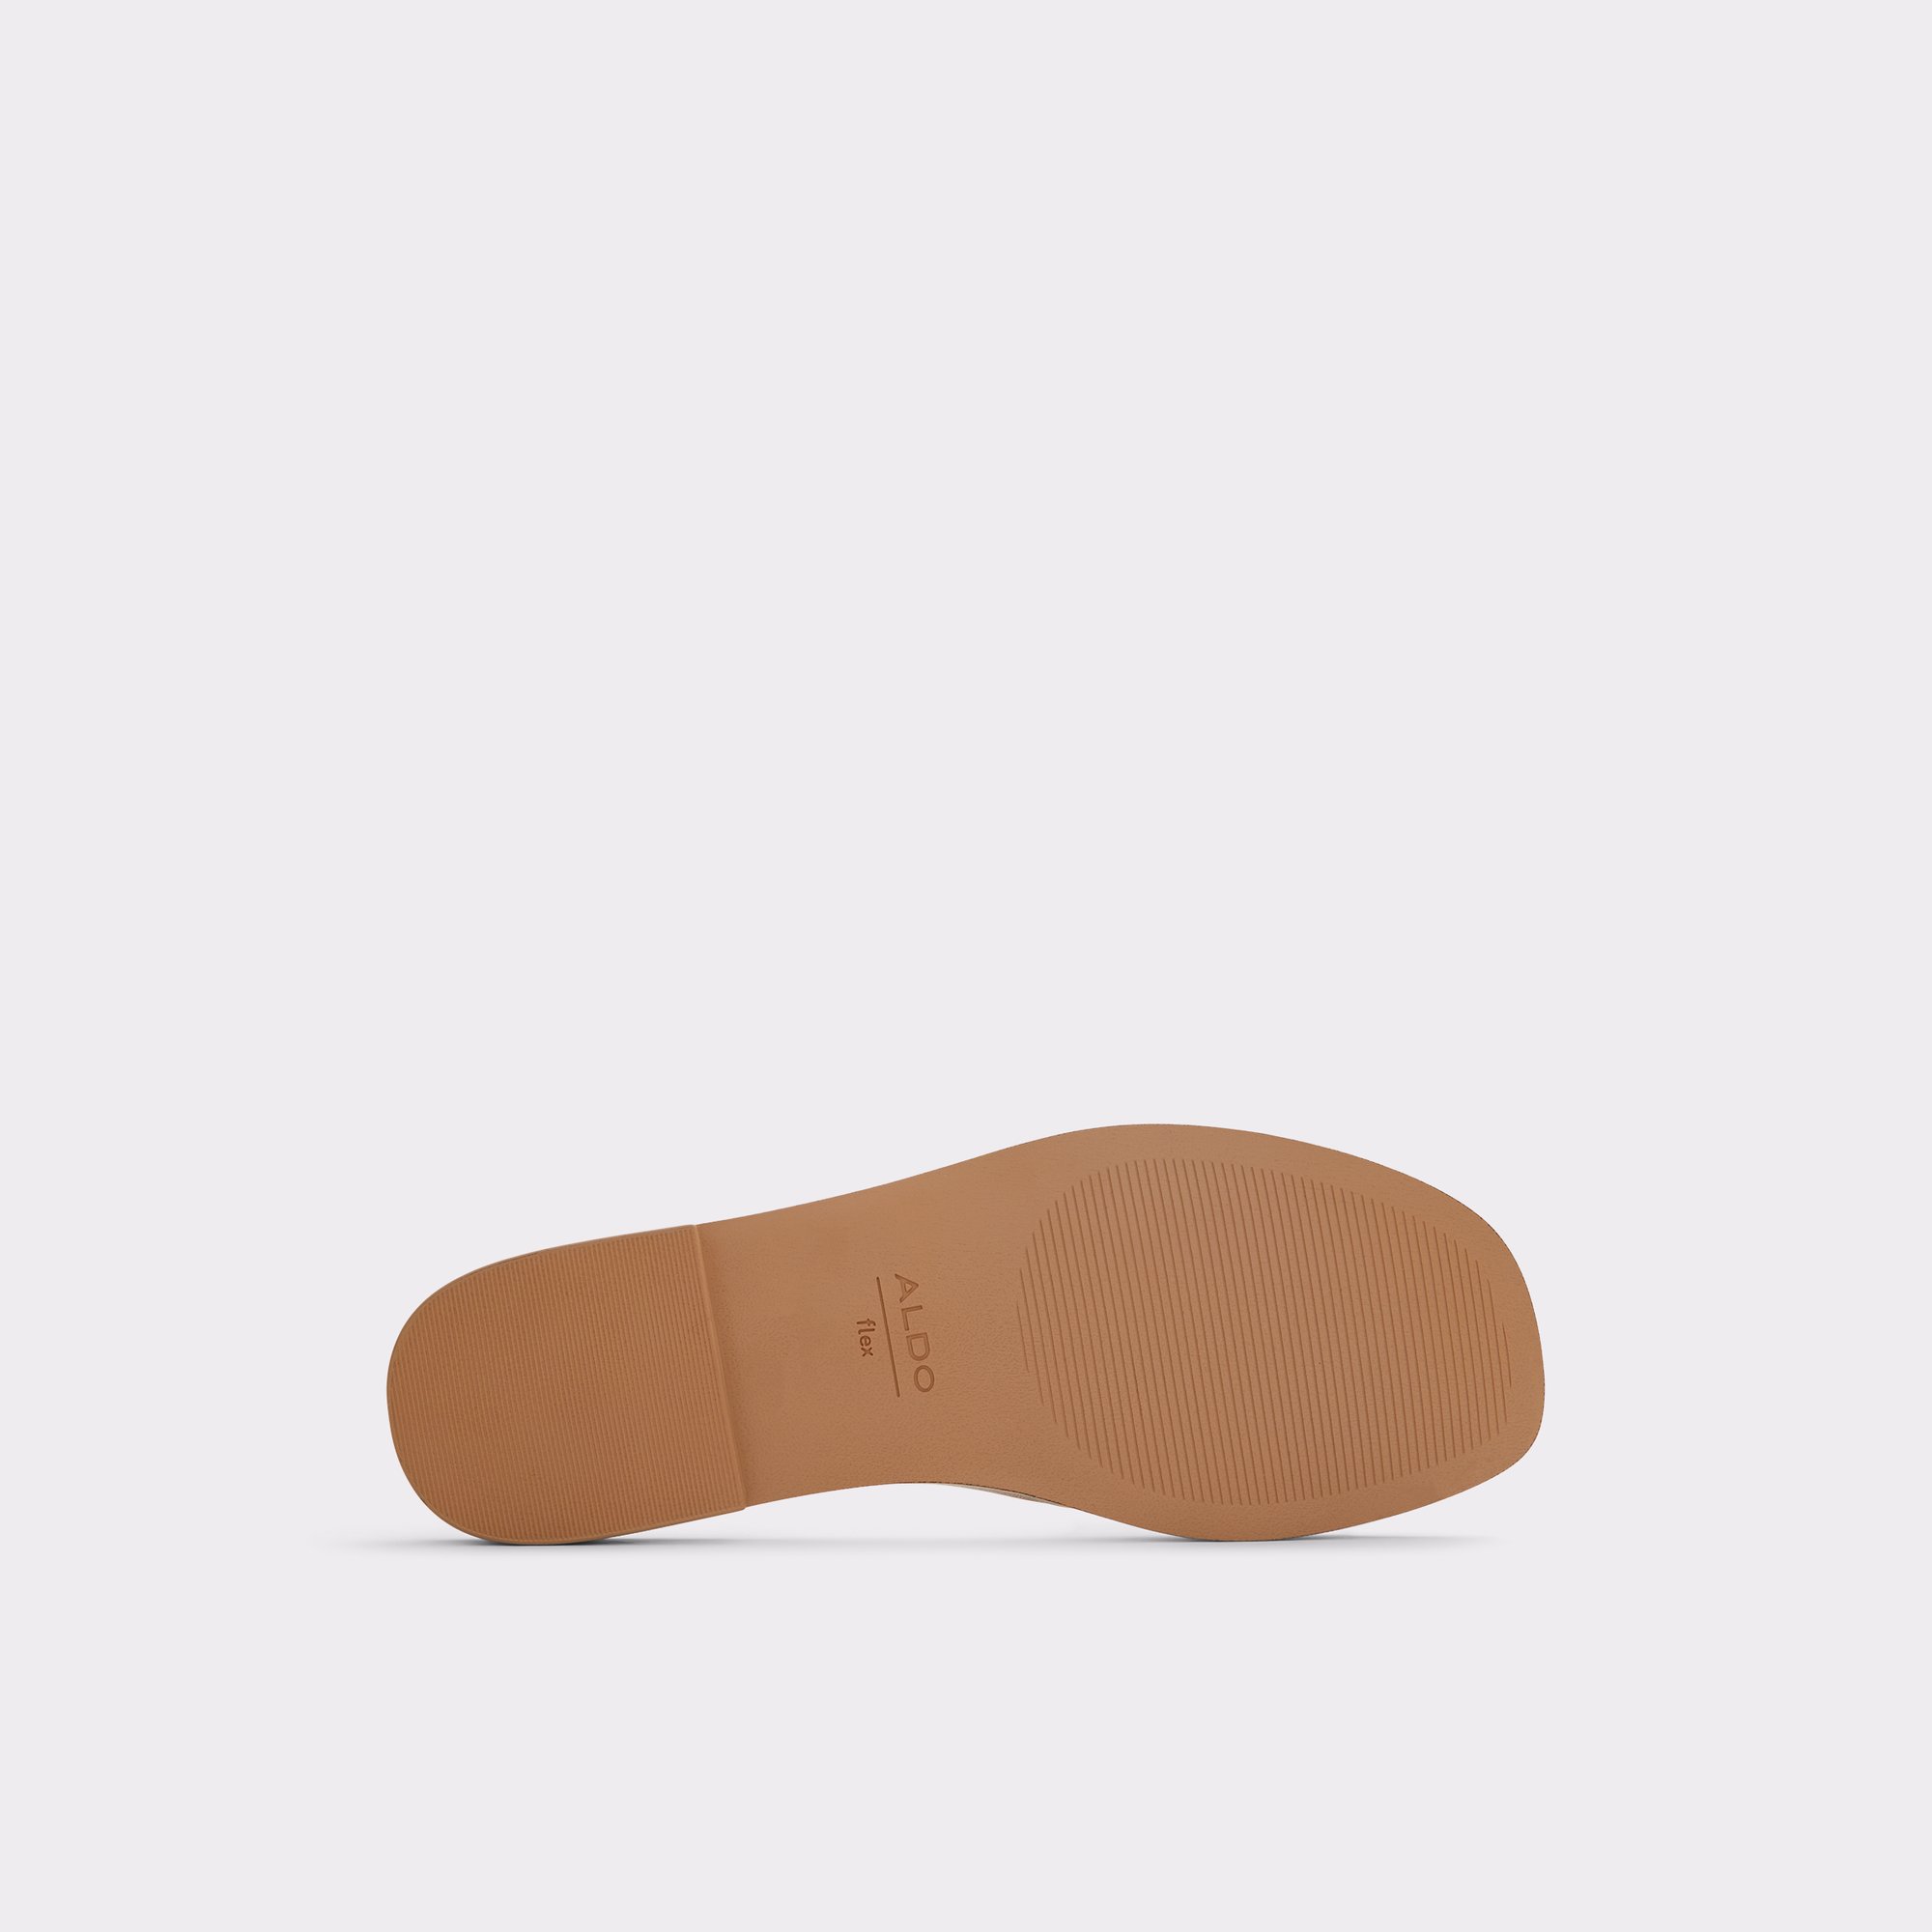 Glaeswen Clear Women's Flat Sandals | ALDO US